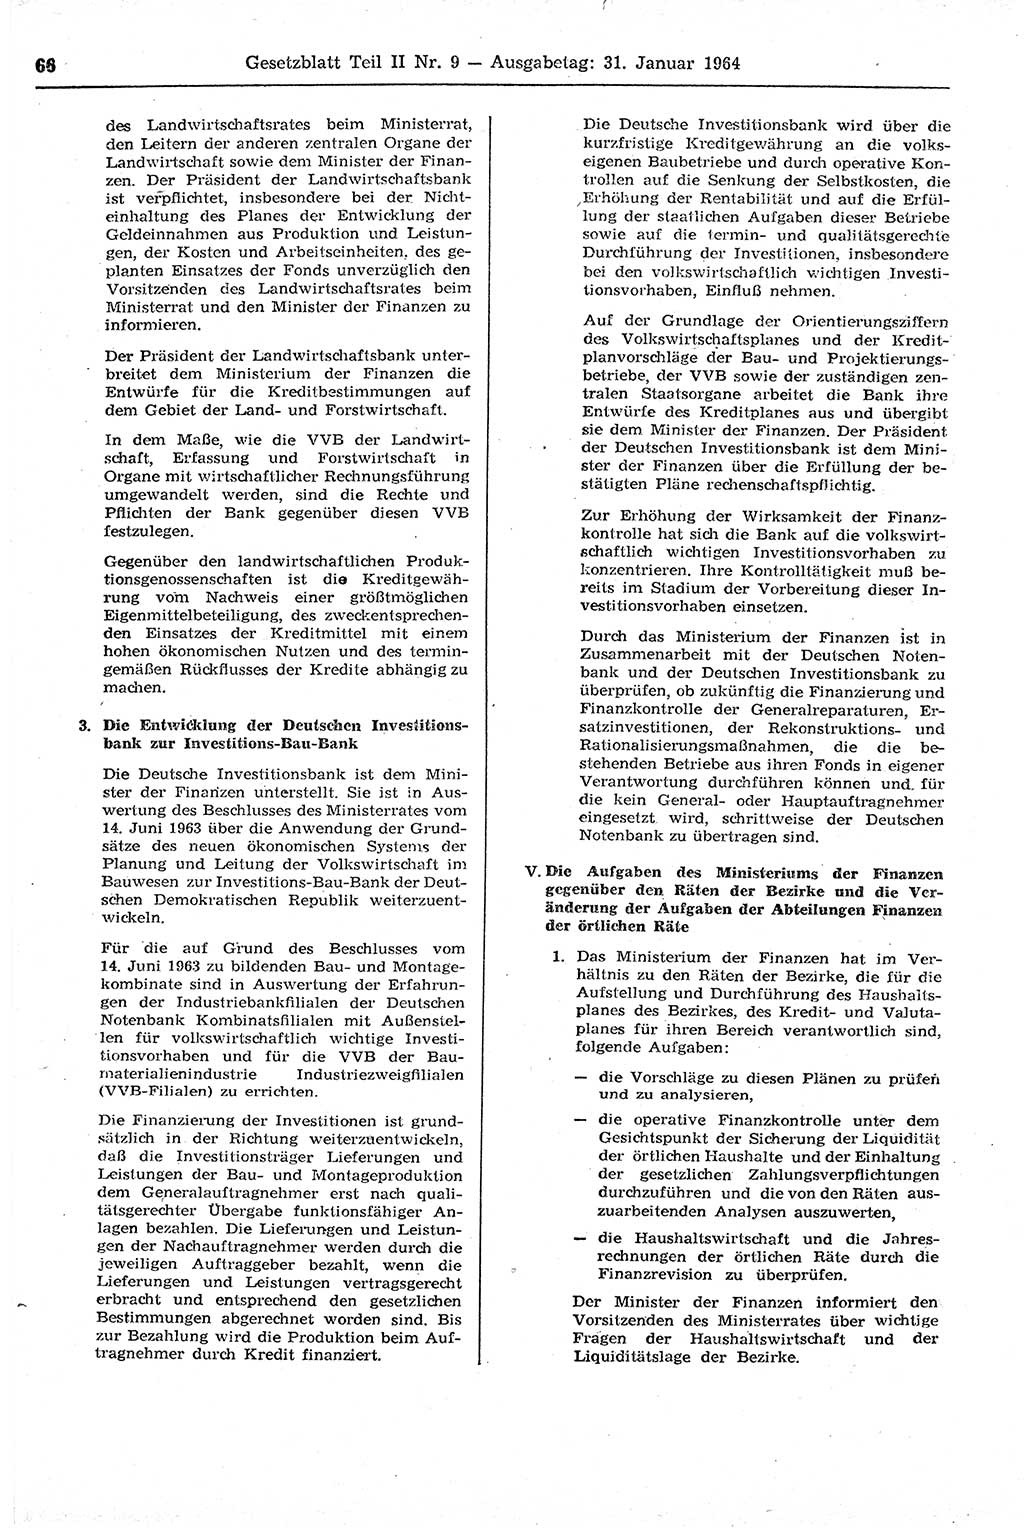 Gesetzblatt (GBl.) der Deutschen Demokratischen Republik (DDR) Teil ⅠⅠ 1964, Seite 66 (GBl. DDR ⅠⅠ 1964, S. 66)